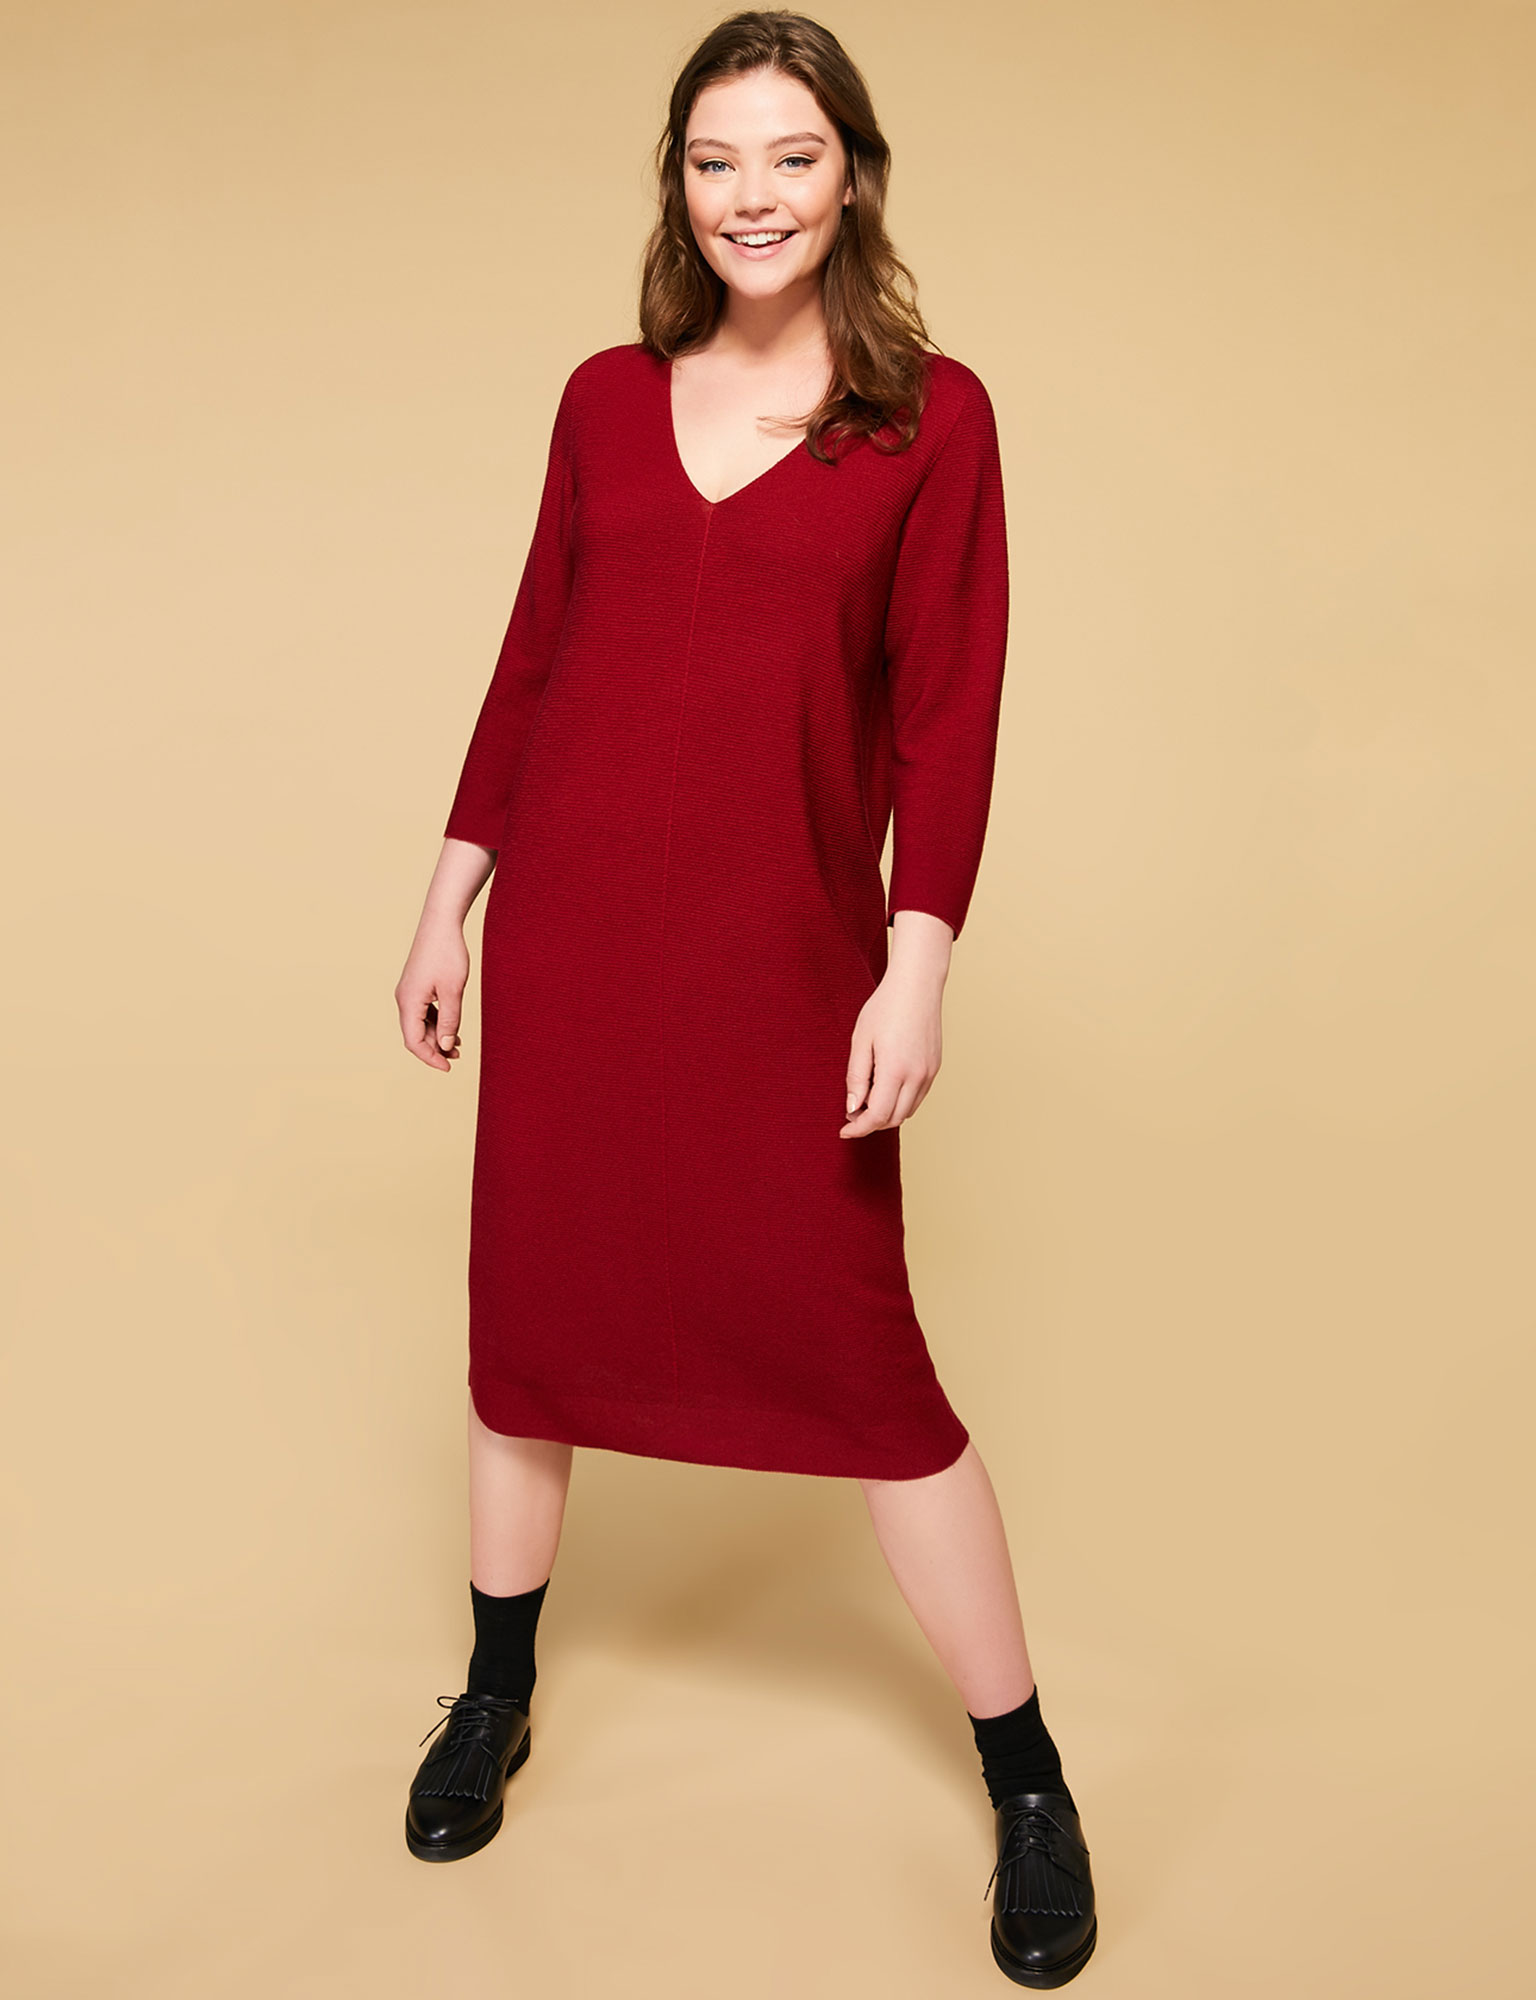 Mode ronde : 20 robes tendance pour l'automne - Femme Actuelle